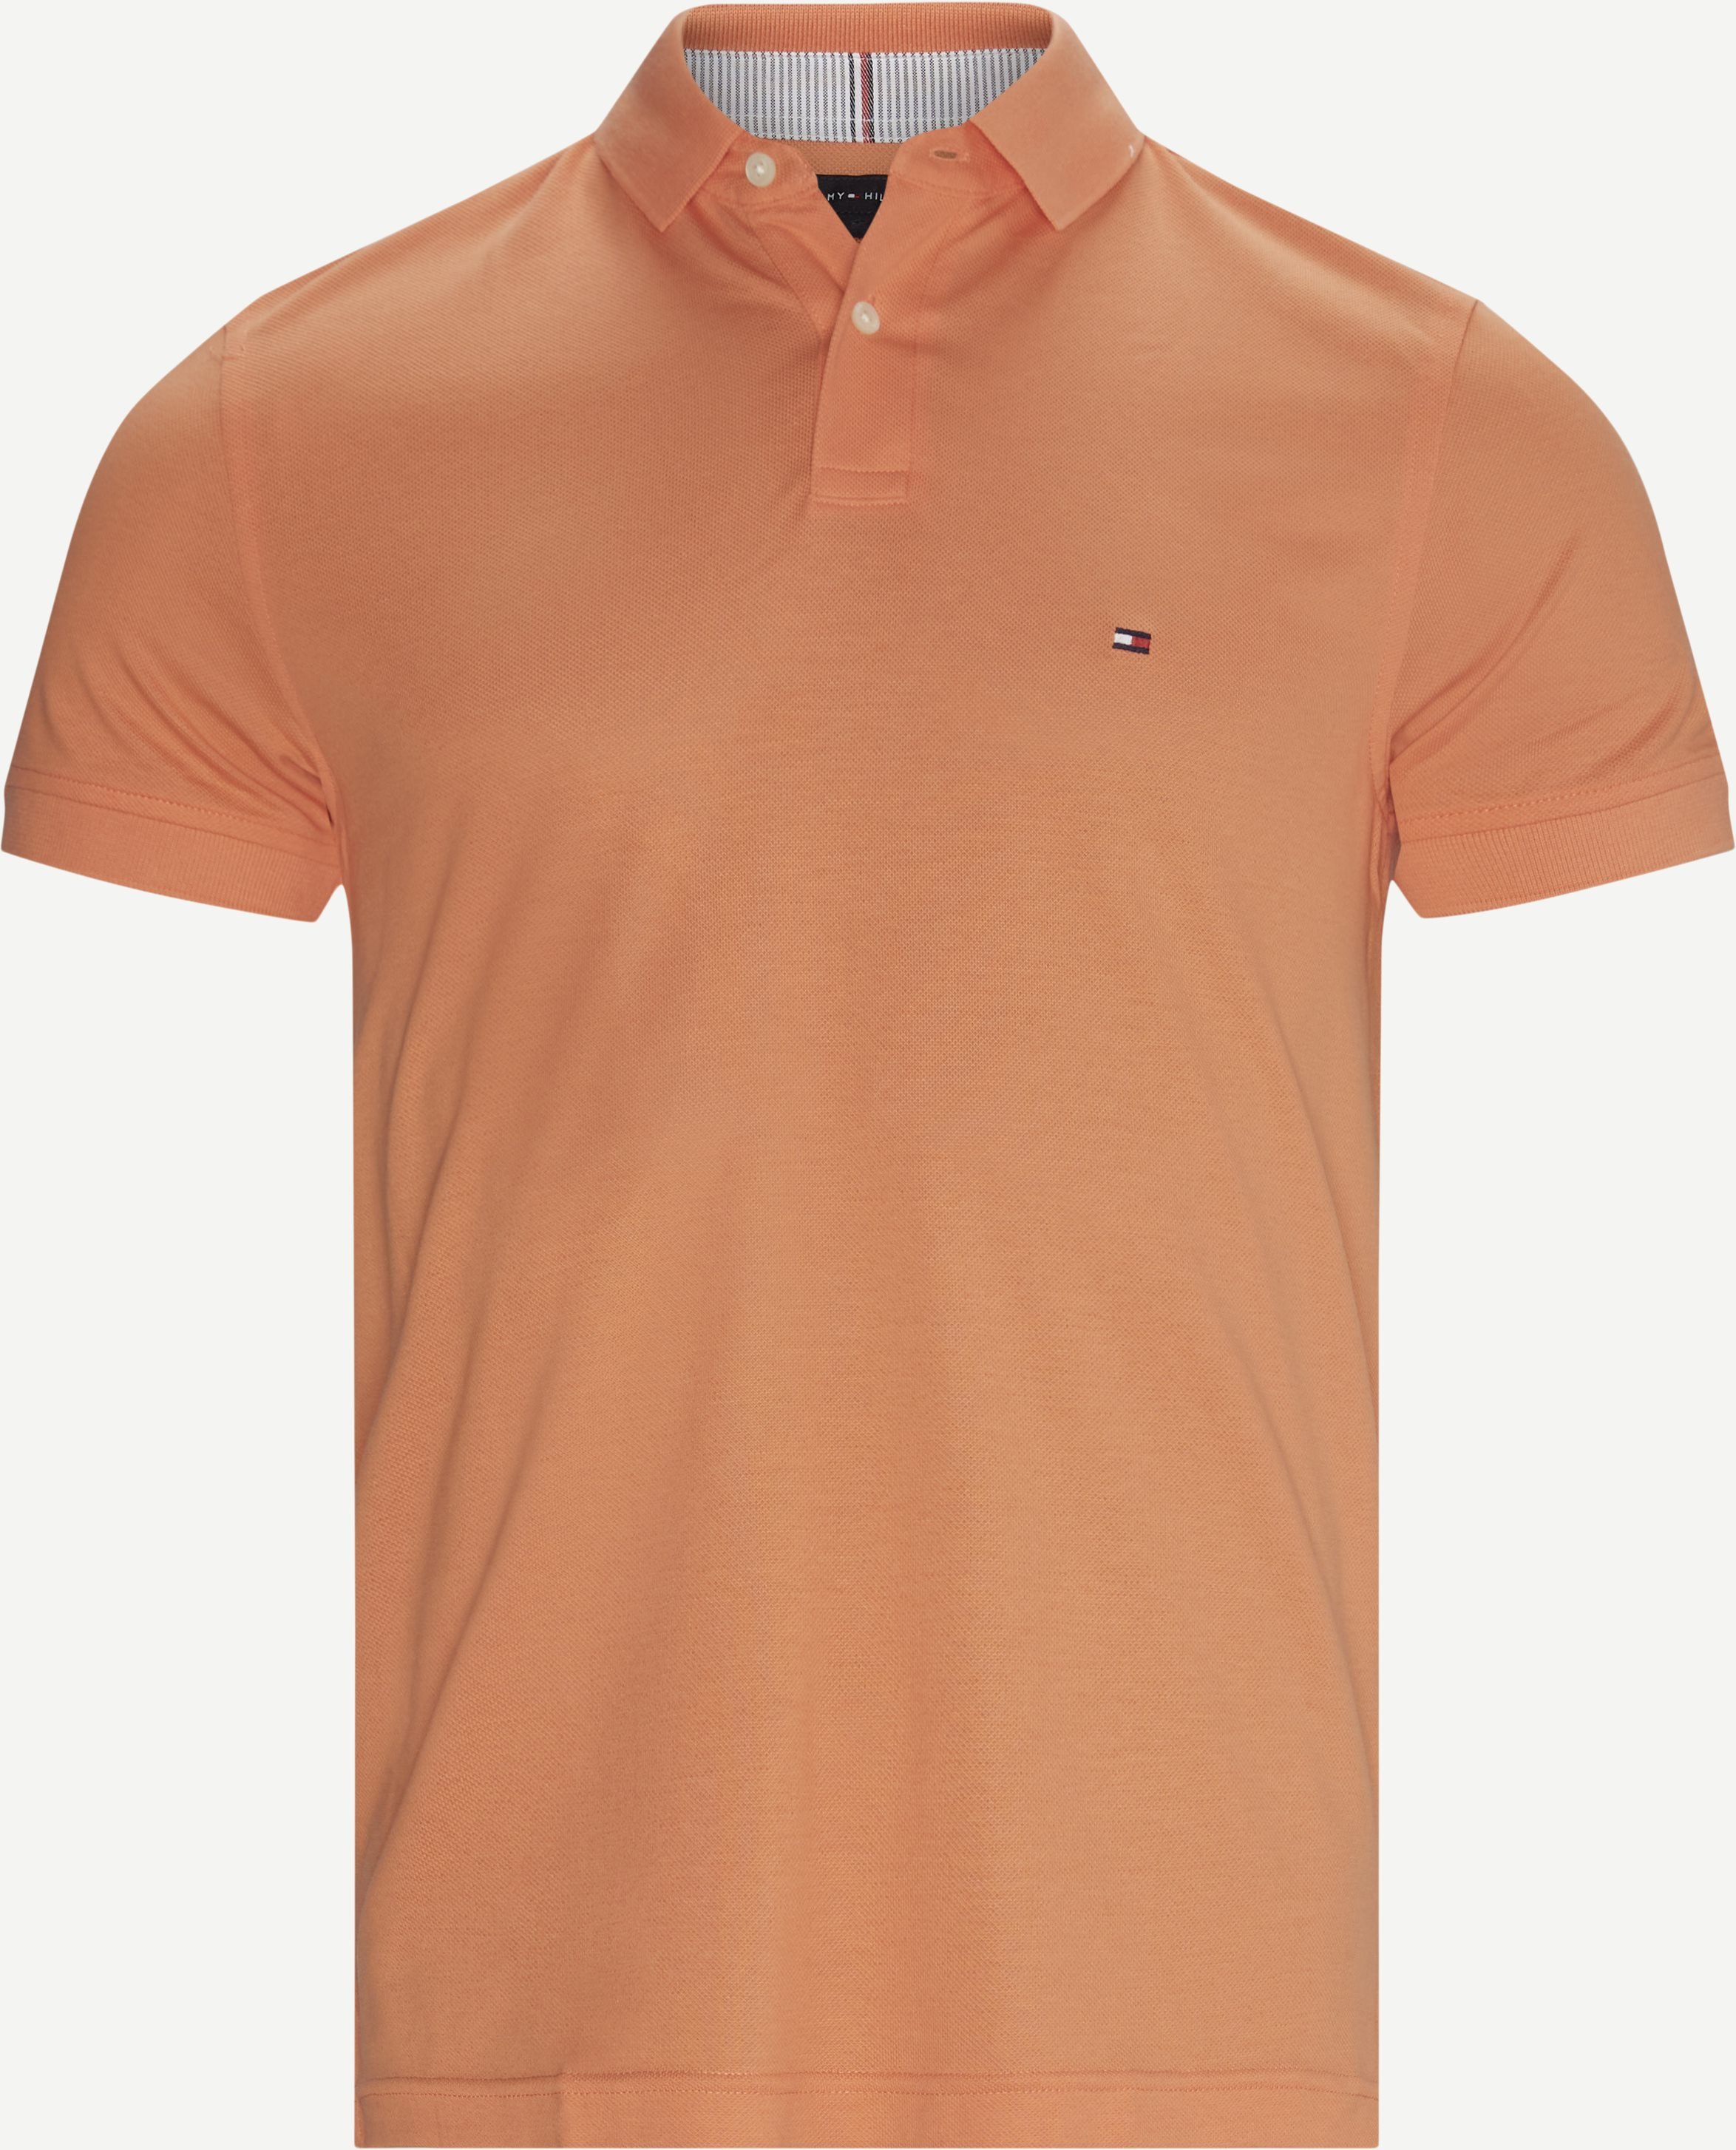 Regular Polo Tee - T-shirts - Regular fit - Orange